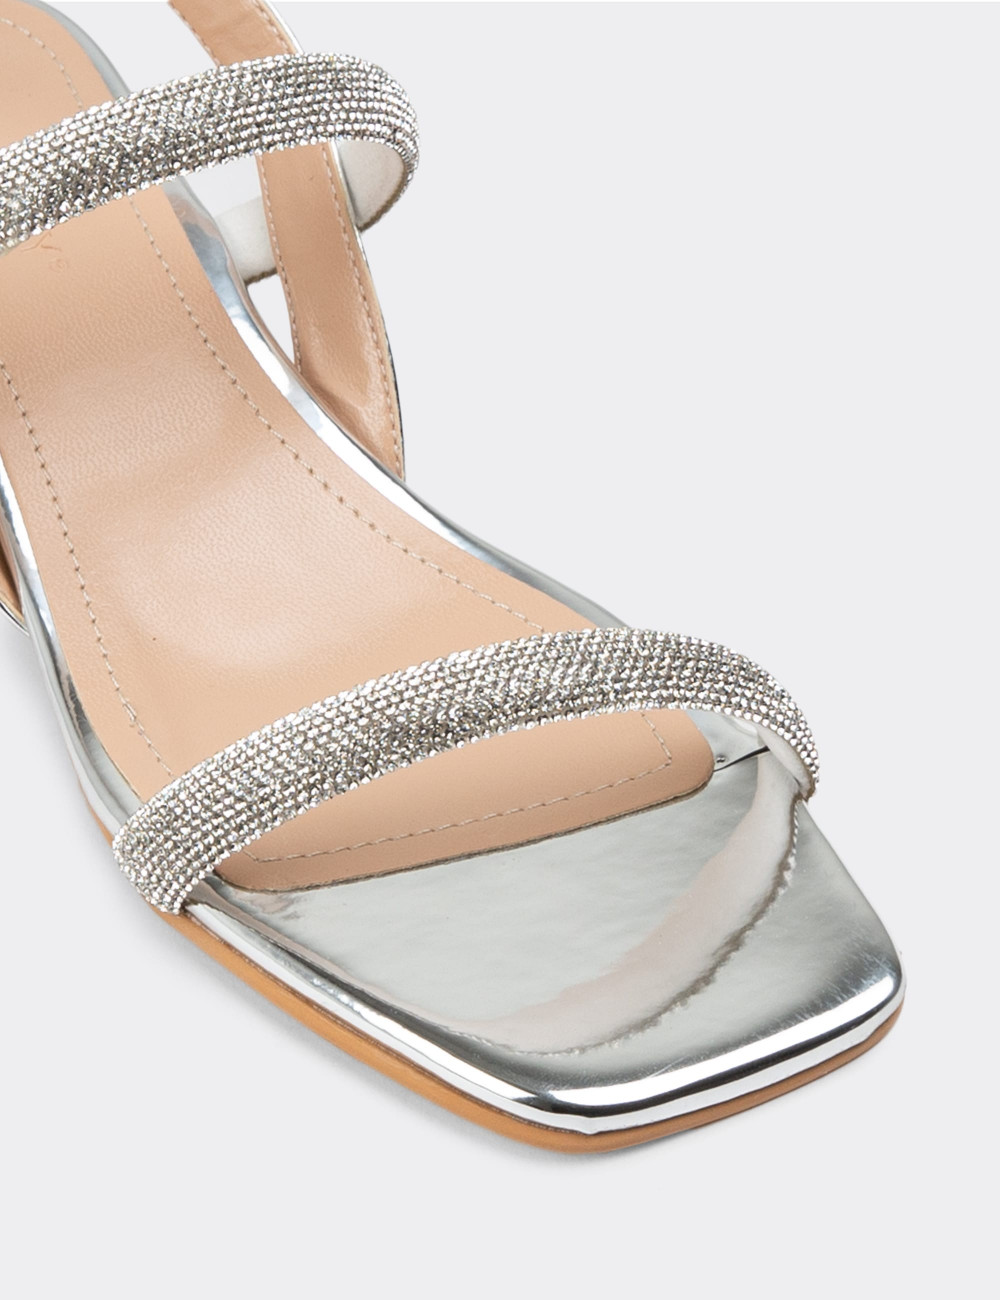 Gümüş Rengi Topuklu Kadın Abiye Ayakkabı - N2030ZGMSC01